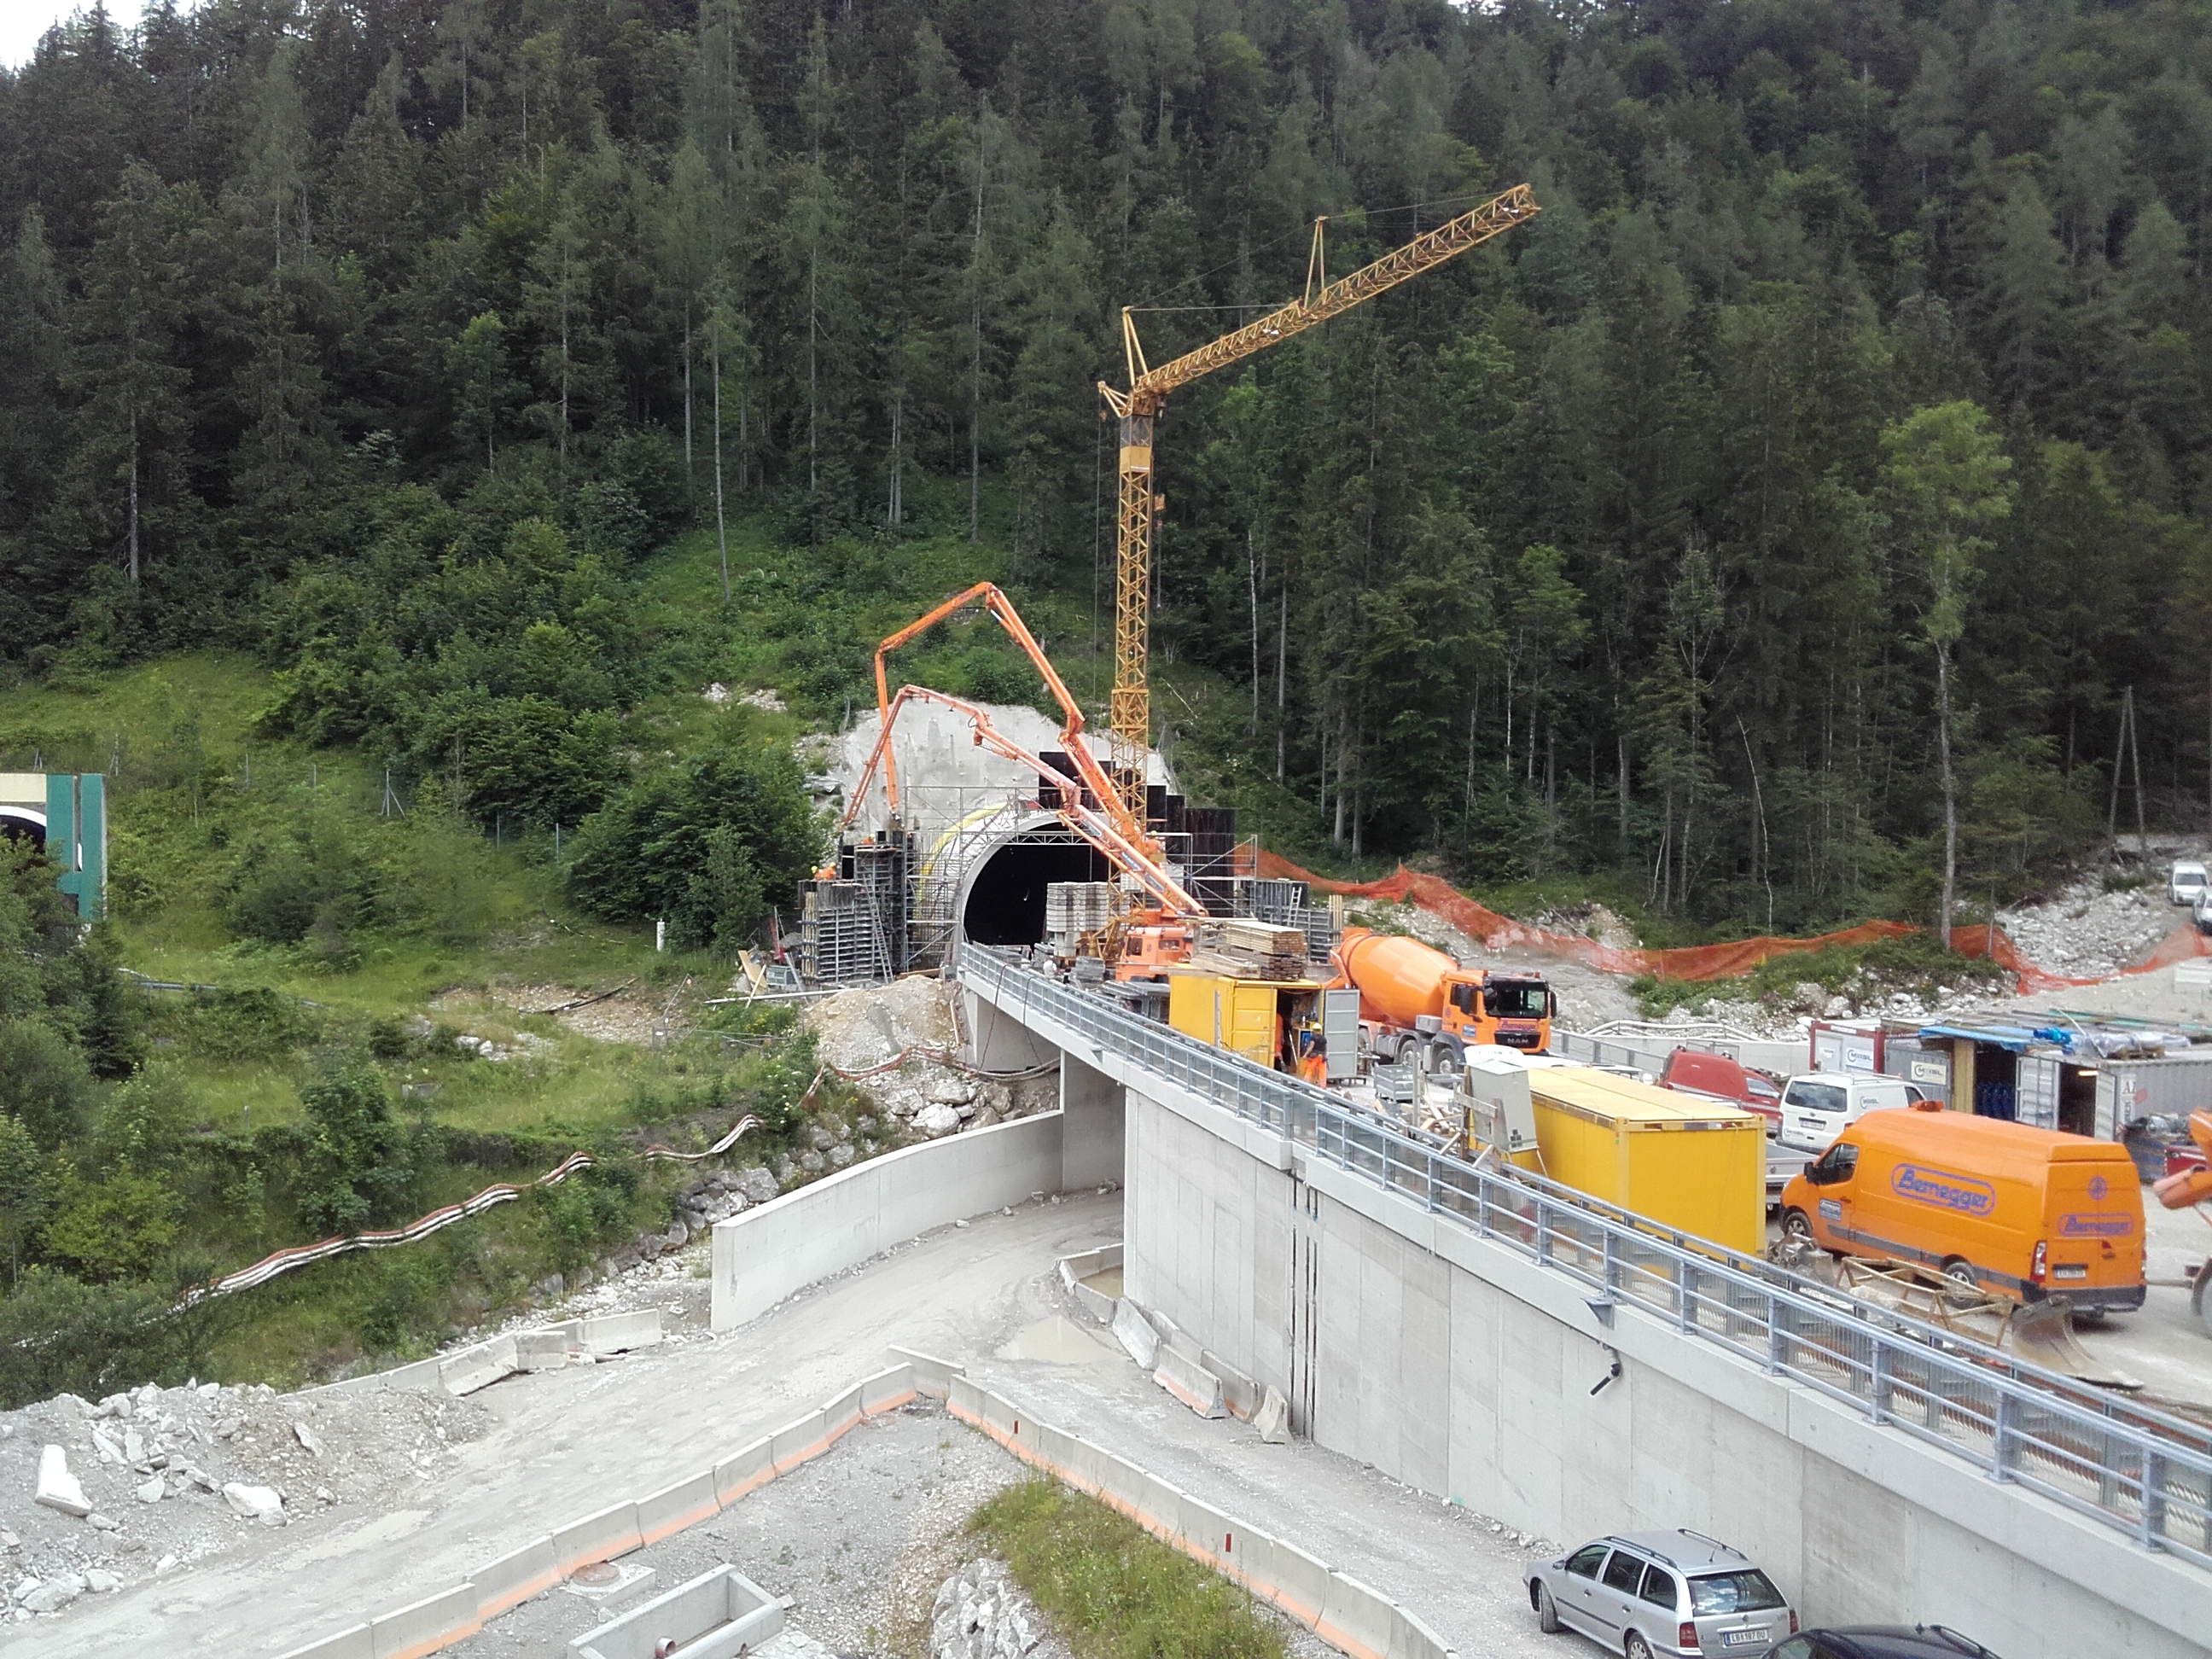 Tunnelkette Klaus - Construcții industriale